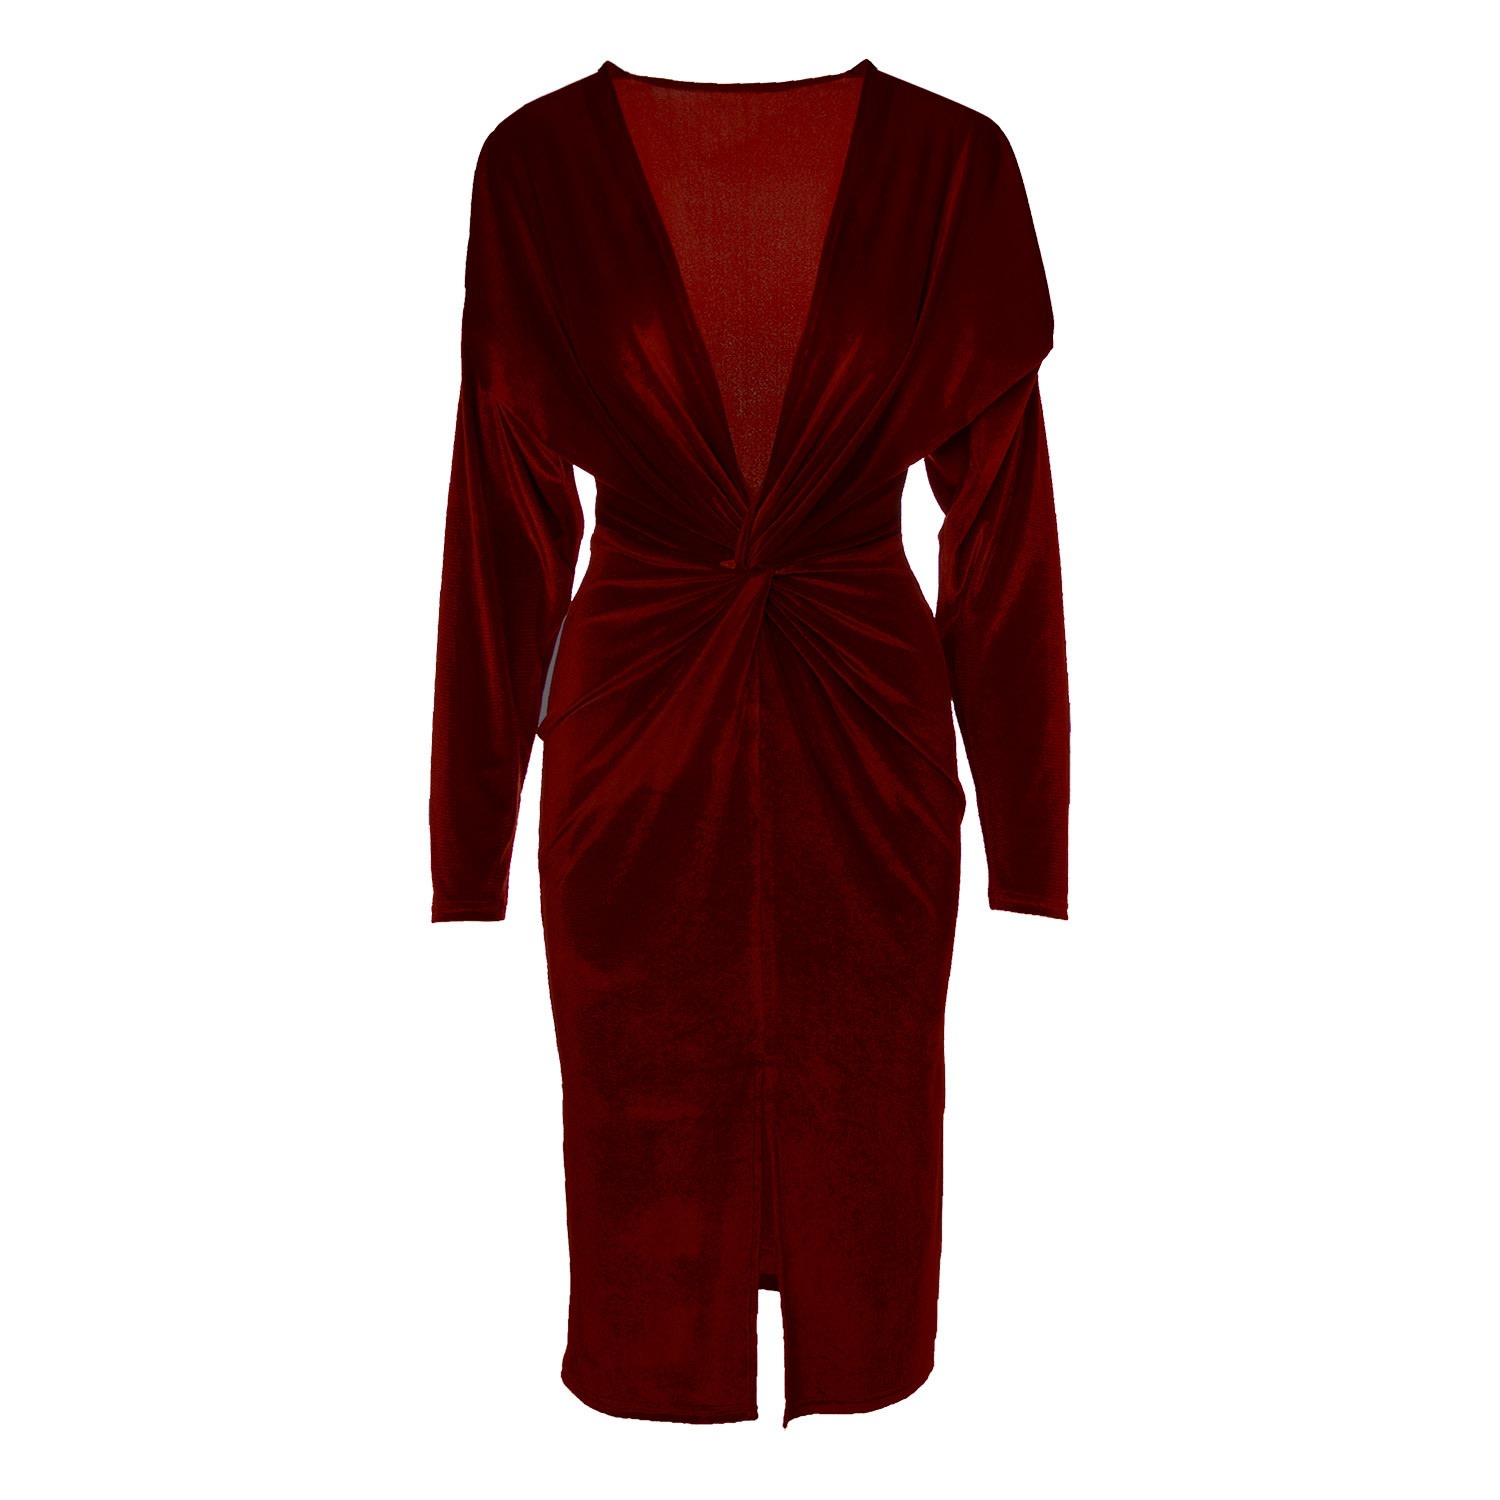 Women’s Red Burgundy Velvet Dress With Knot Small Bluzat